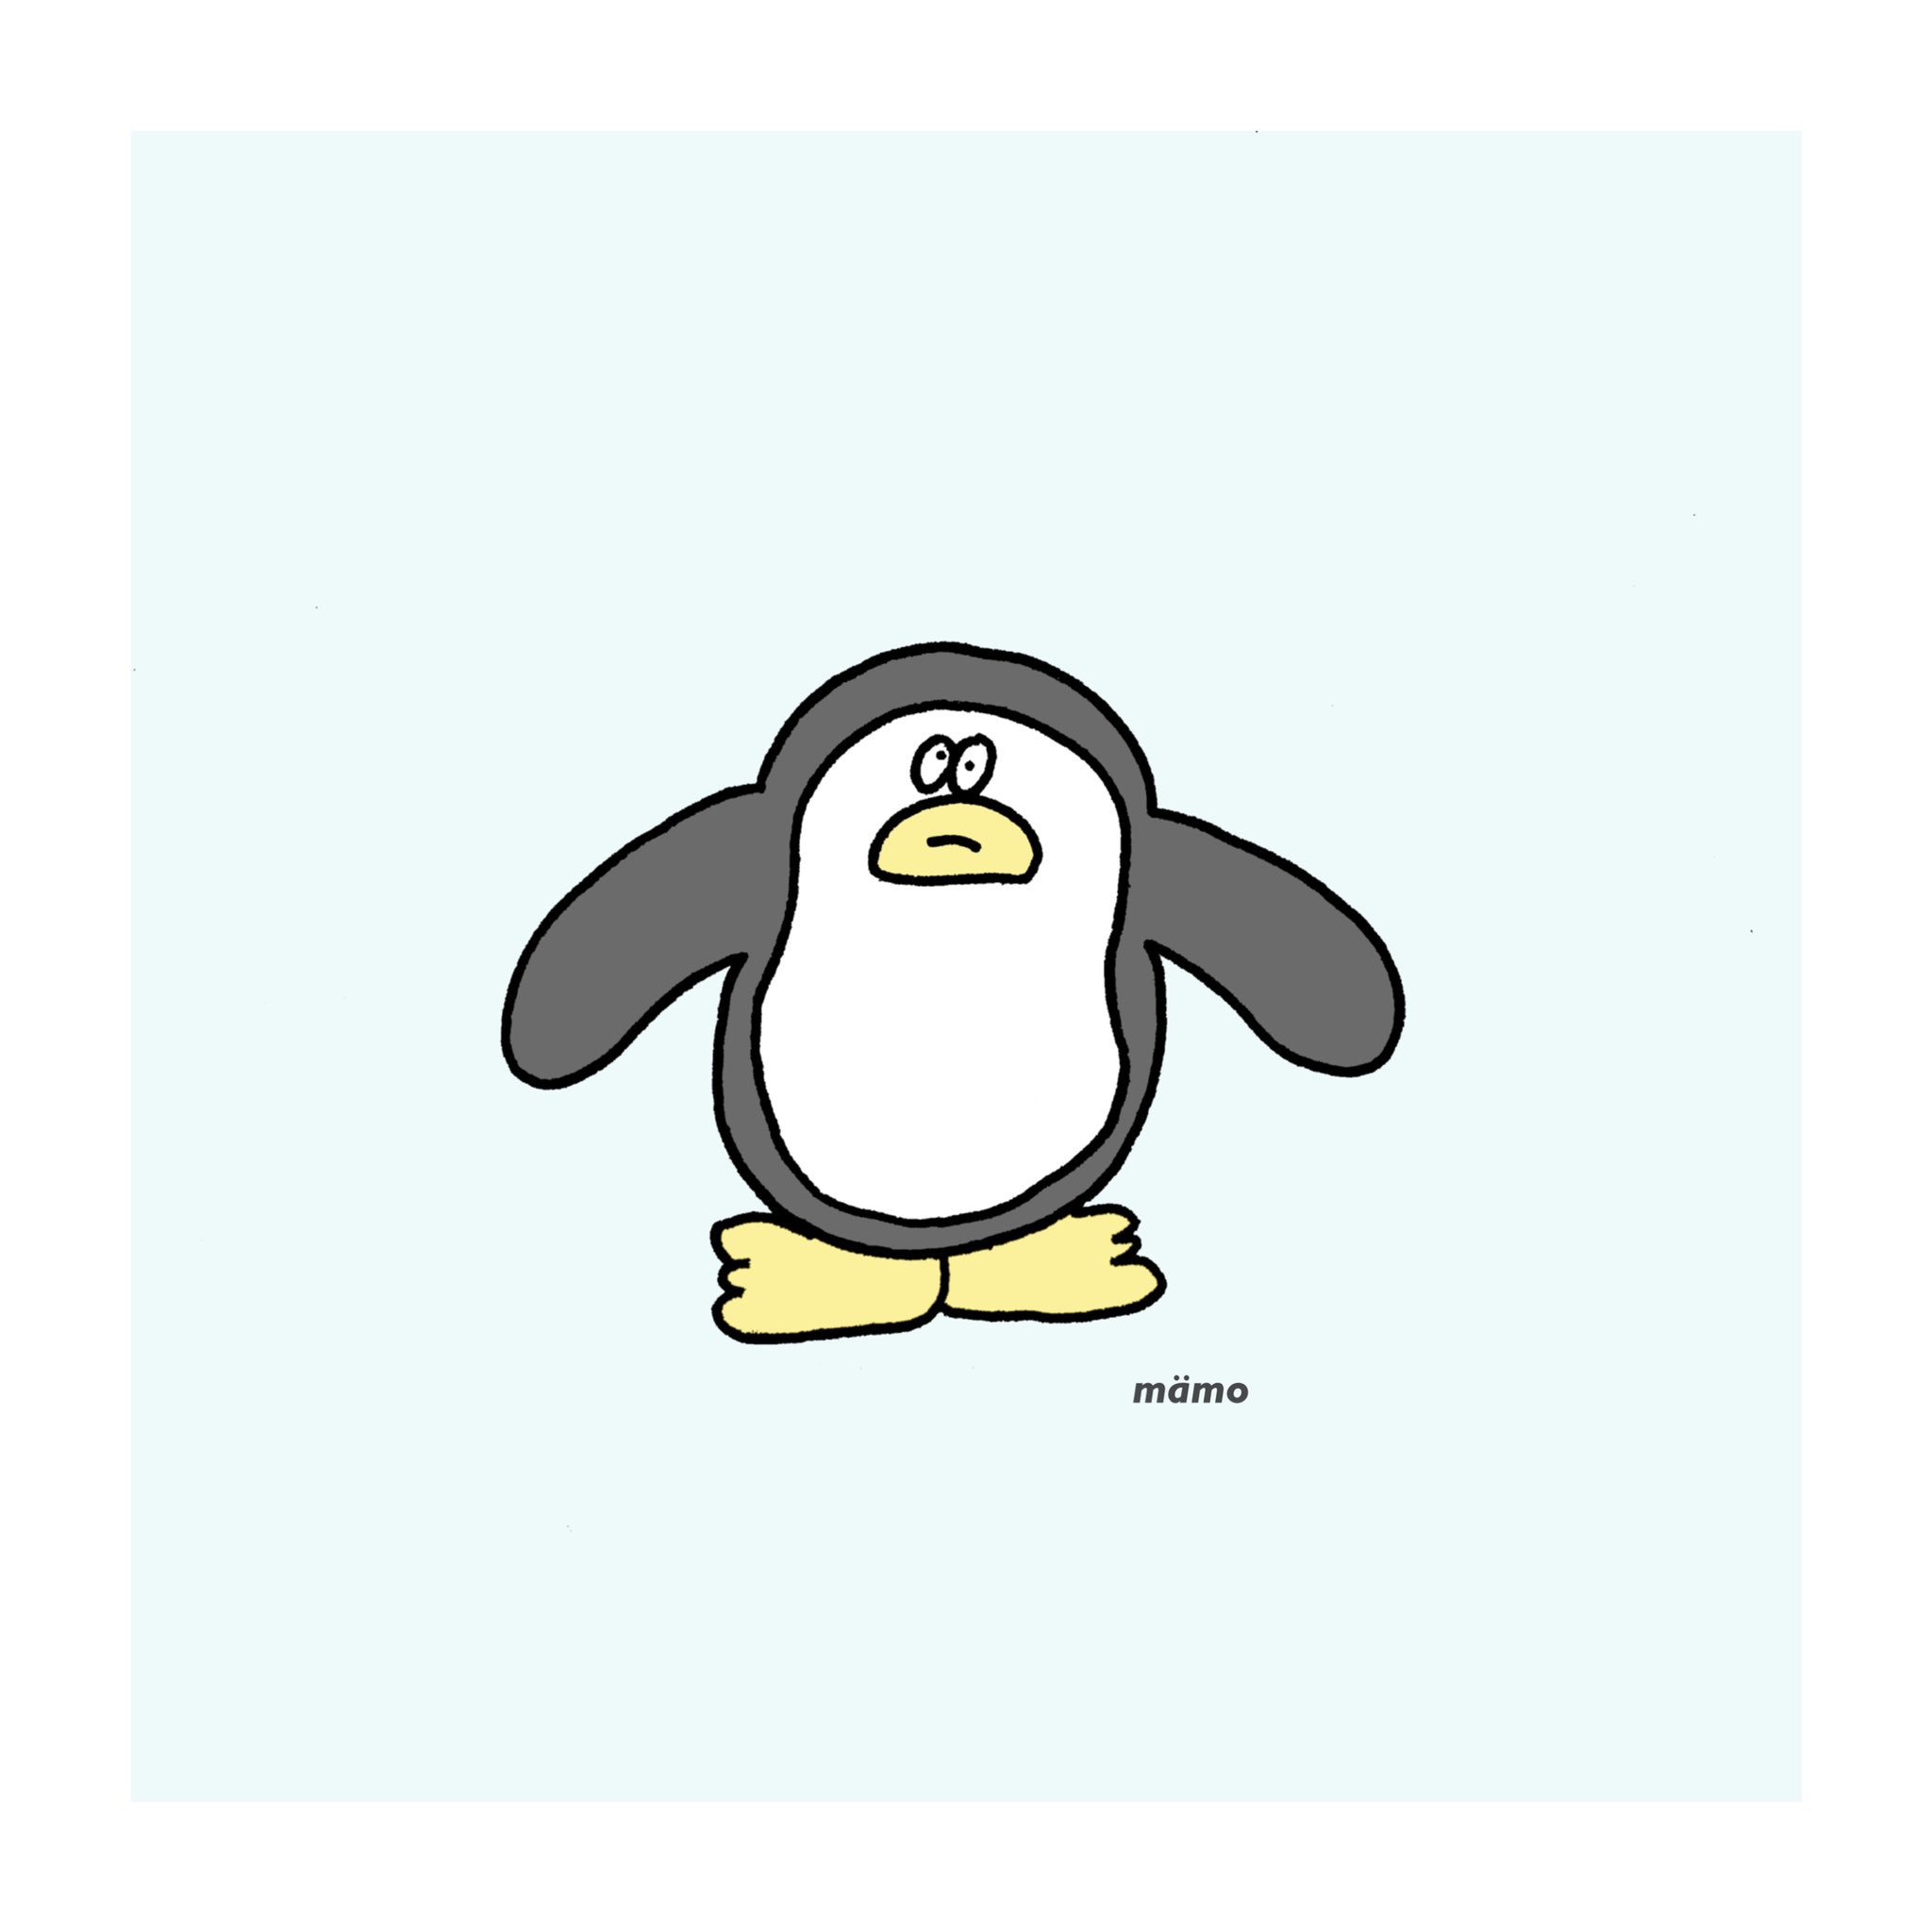 Twitter 上的 Mamo ゆるいペンギン くそゆるいペンギン イラスト シュール 絵描きさんと繋がりたい T Co Z47m1tcnsv Twitter